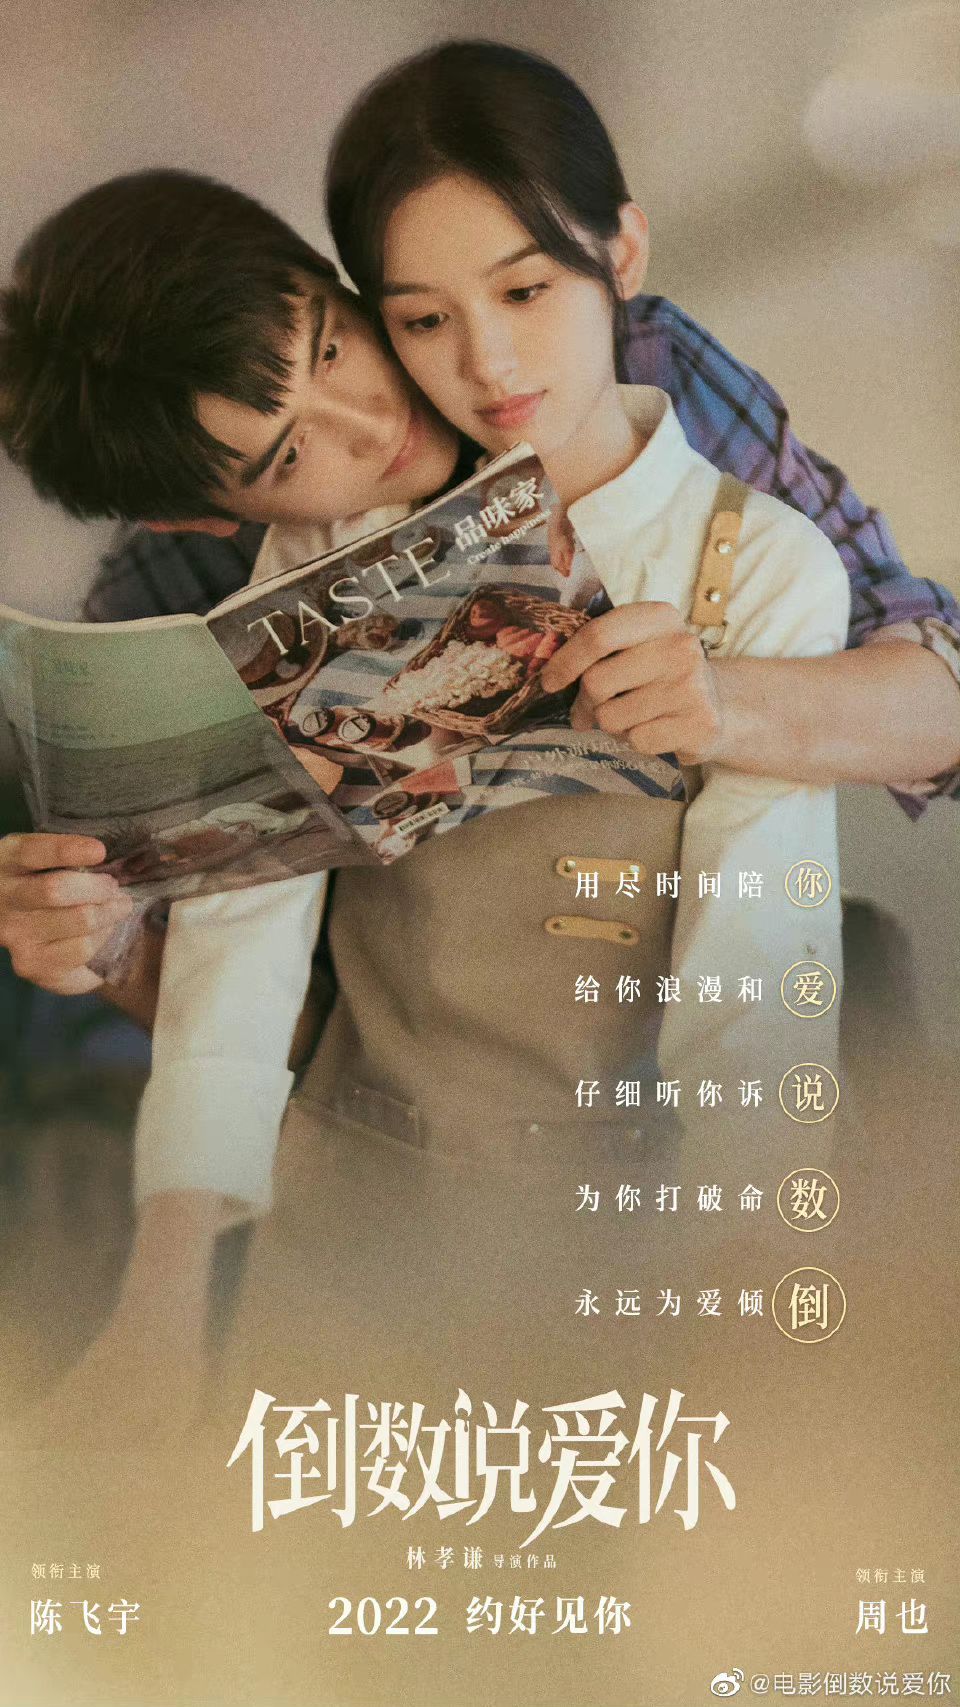 Đếm Ngược Nói Yêu Em của Trần Phi Vũ và Châu Dã tung poster cặp đôi mới nhất, dân tình phấn khích vì quá đẹp đôi - Ảnh 2